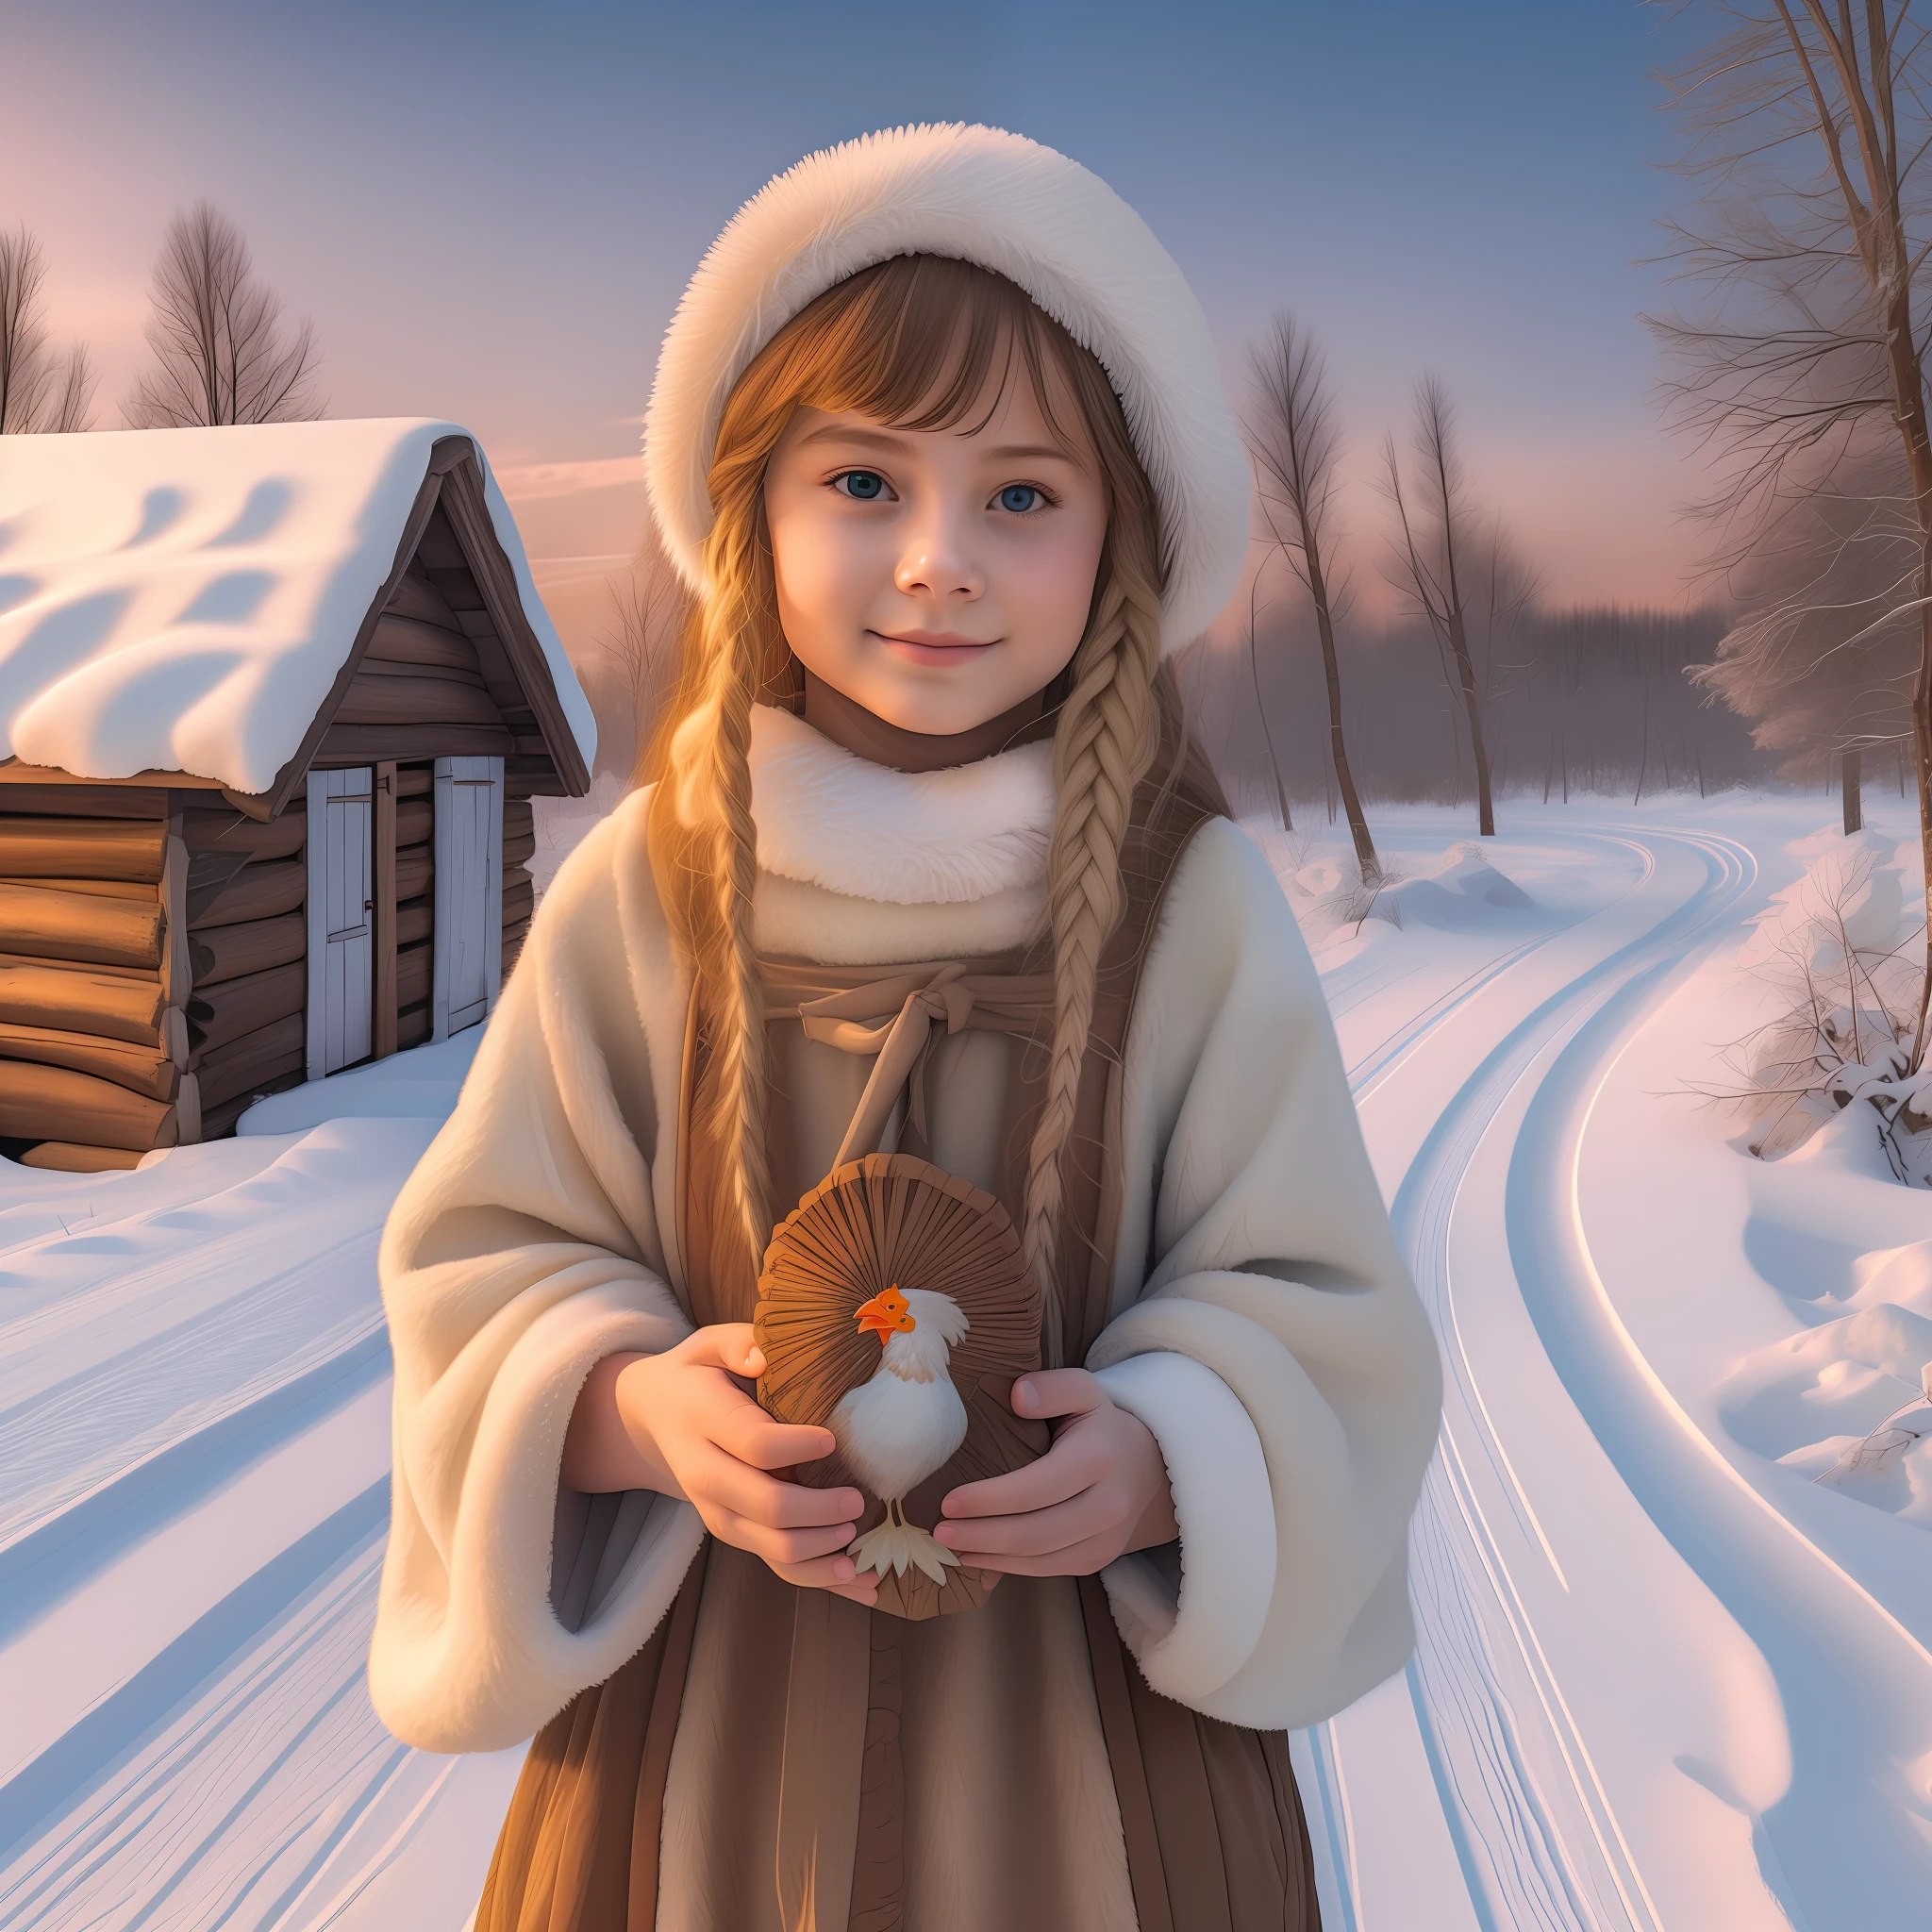 一個可愛的年輕女子的原始照片，她的頭是一隻雞, 作為俄羅斯農民, 赤腳, 手裡拿著瓦倫基的俄羅斯鞋, 冬天, 俄羅斯老村莊的道路, 兩邊都是小屋 , 高細節, 銳利的焦點, 影像是用高階全片幅相機拍攝的, 夜晚的颜色, 柔和的燈光, 夕陽餘暉, 8K